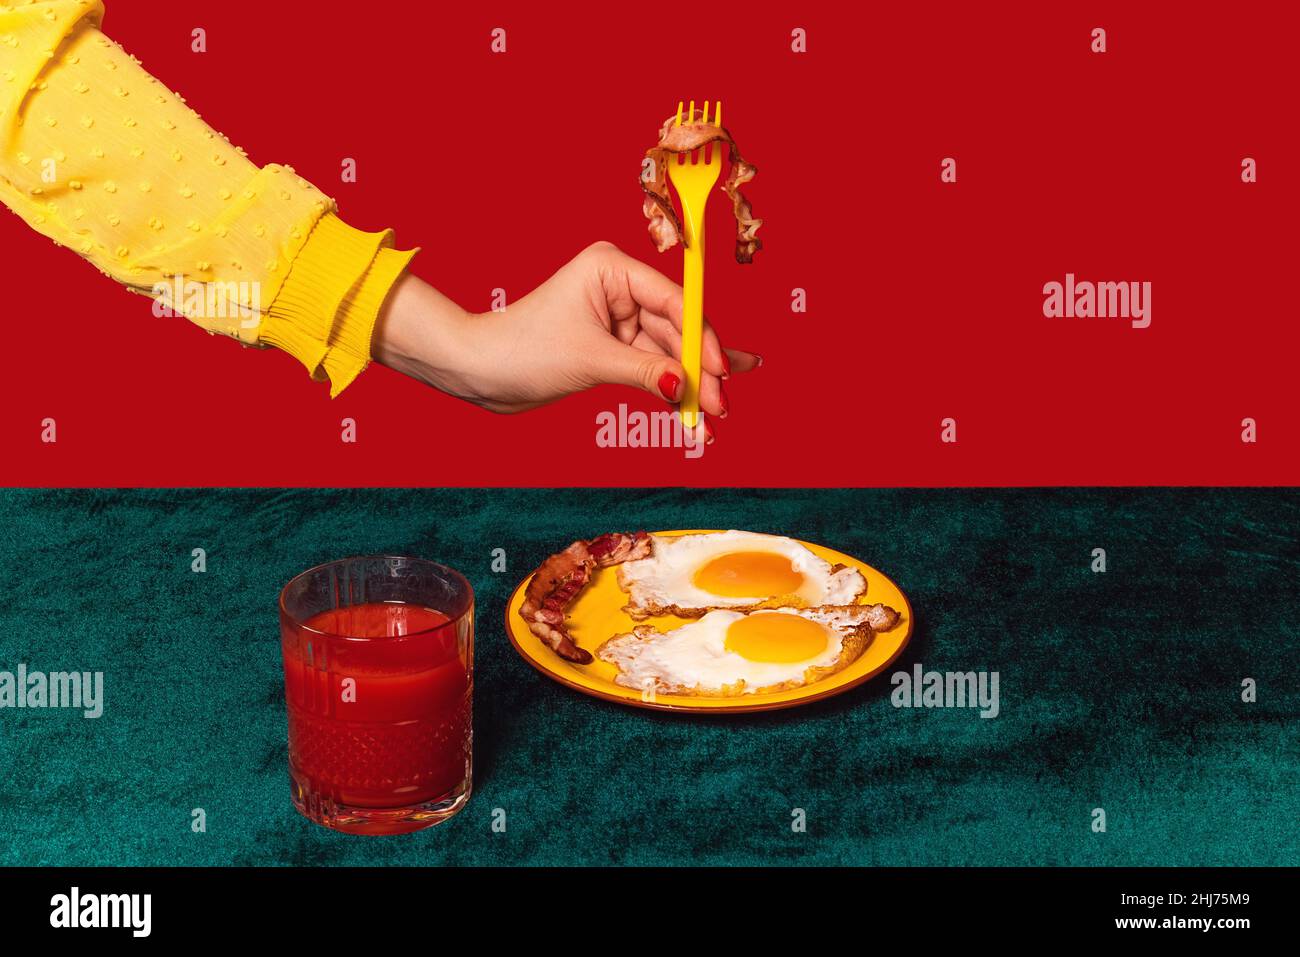 Von Menschenhand schmeckender Speck und Eier auf grünem und rotem Hintergrund. Interieur im Retro-Stil. Food Pop Art Fotografie. Stockfoto